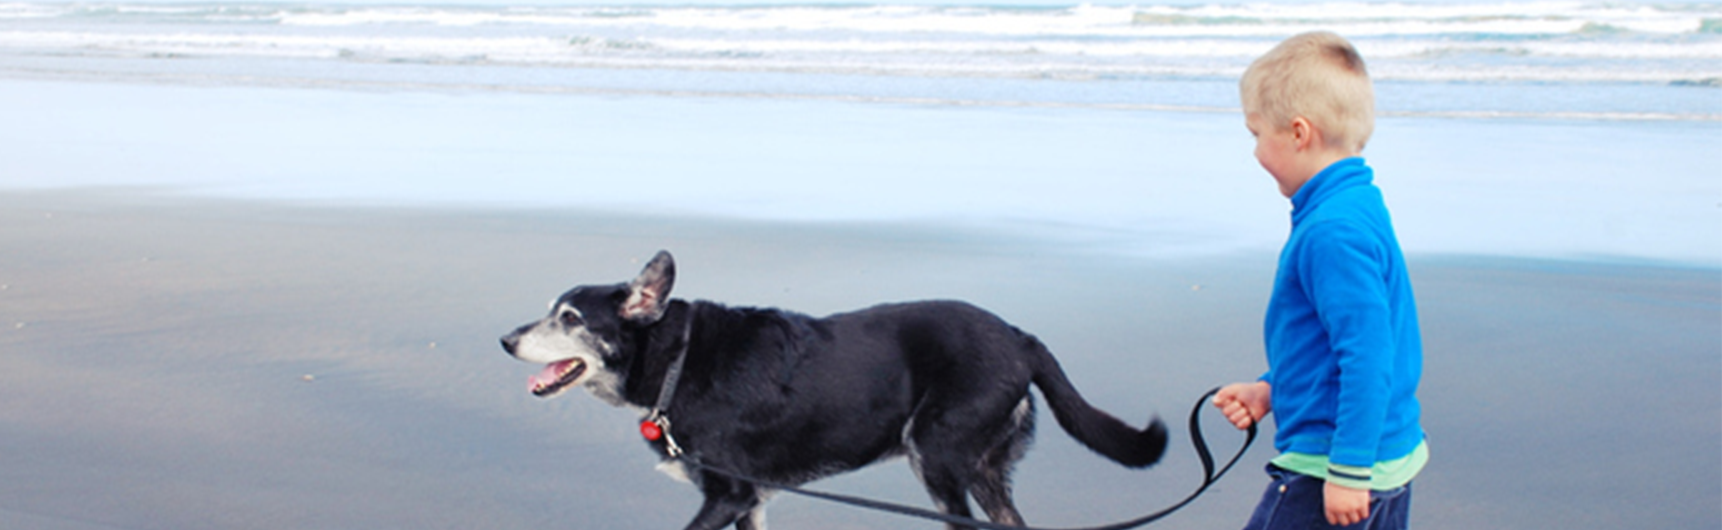 Boy walking dog on beach